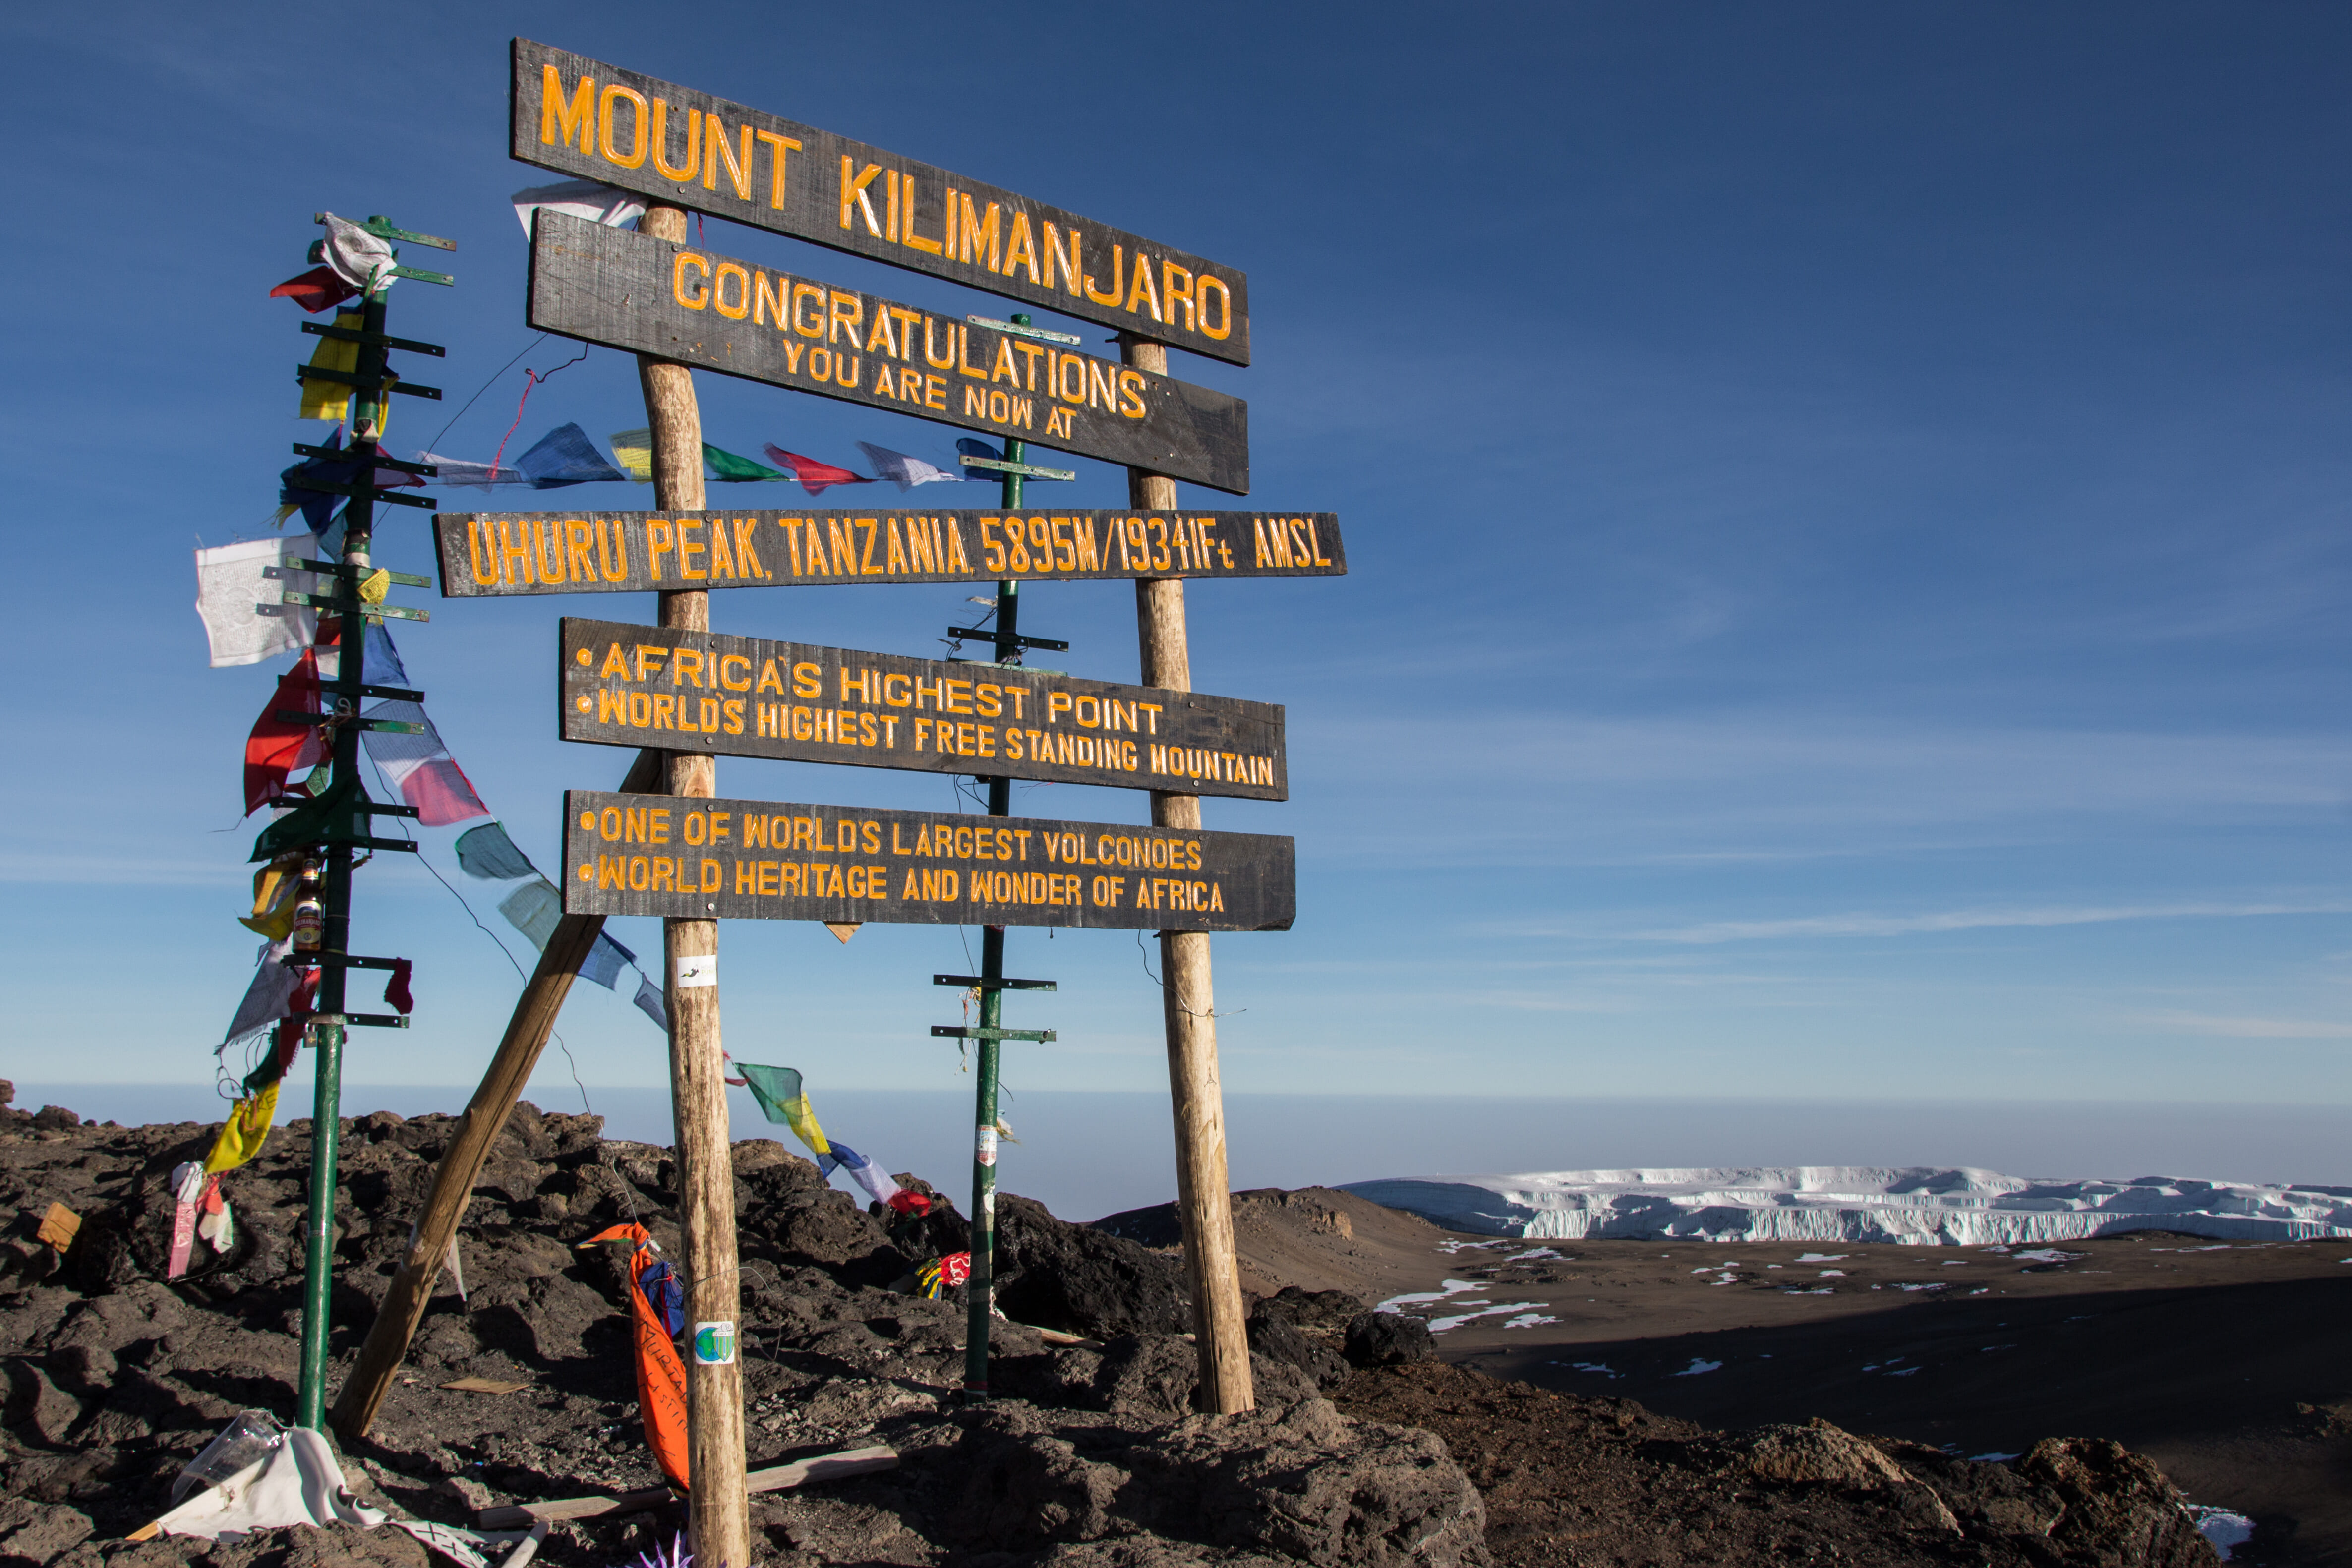 Mount Kilimanjaro summit